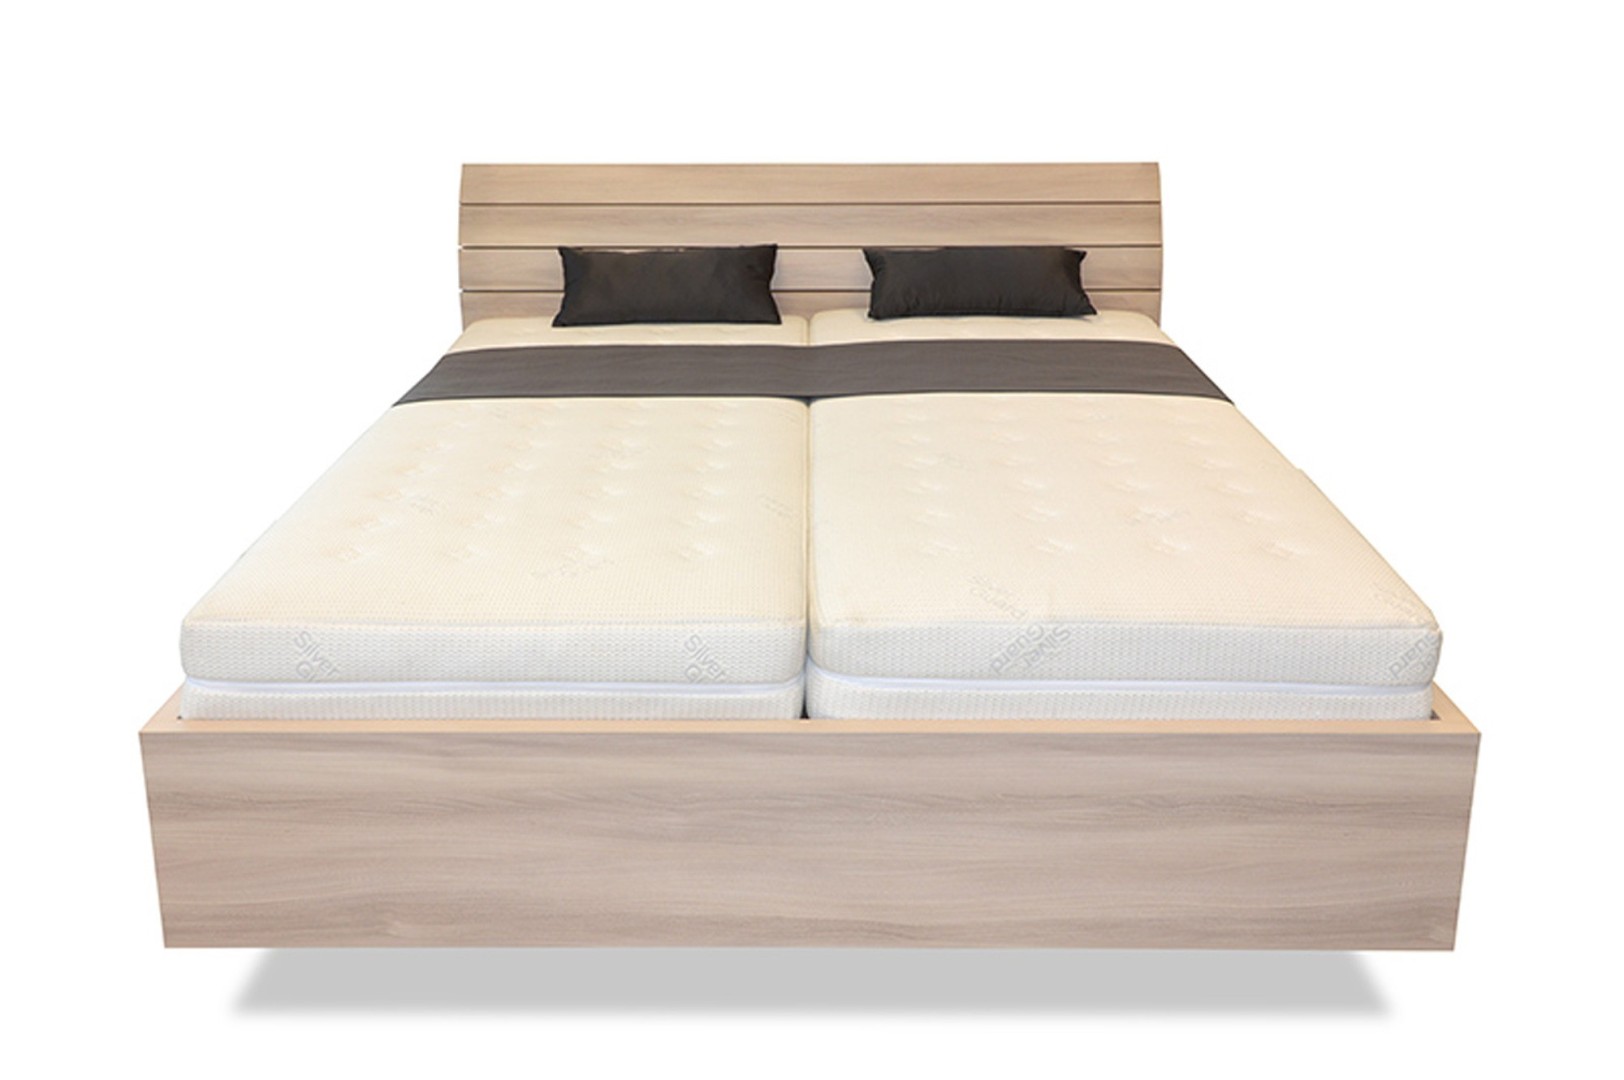 Ahorn SALINA Basic - vznášející se dvoulůžková postel 160 x 190 cm, lamino